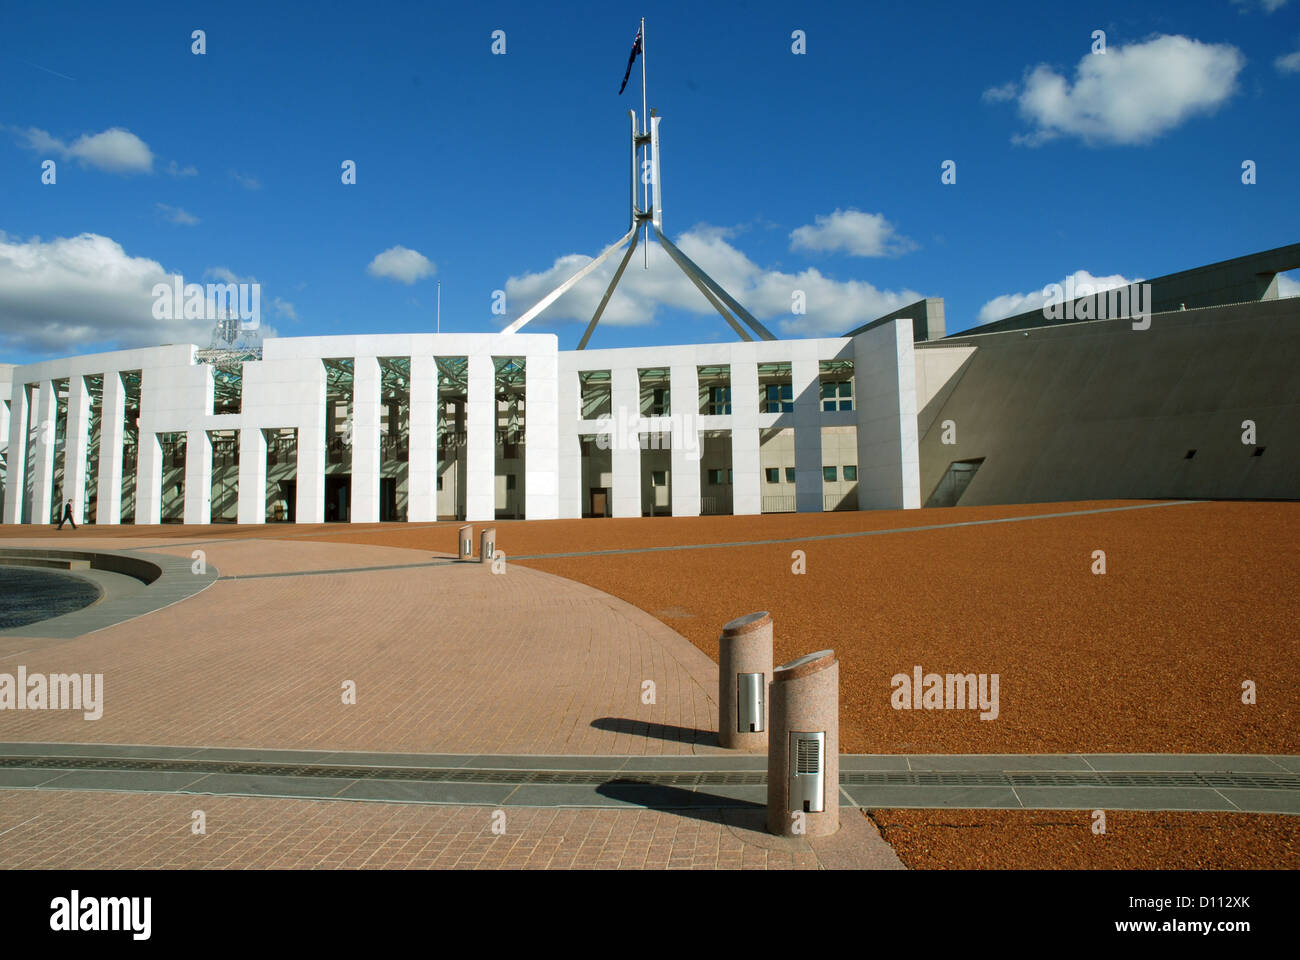 Entrée de la Maison du Parlement, de l'Australie Canberra, ACT. Banque D'Images